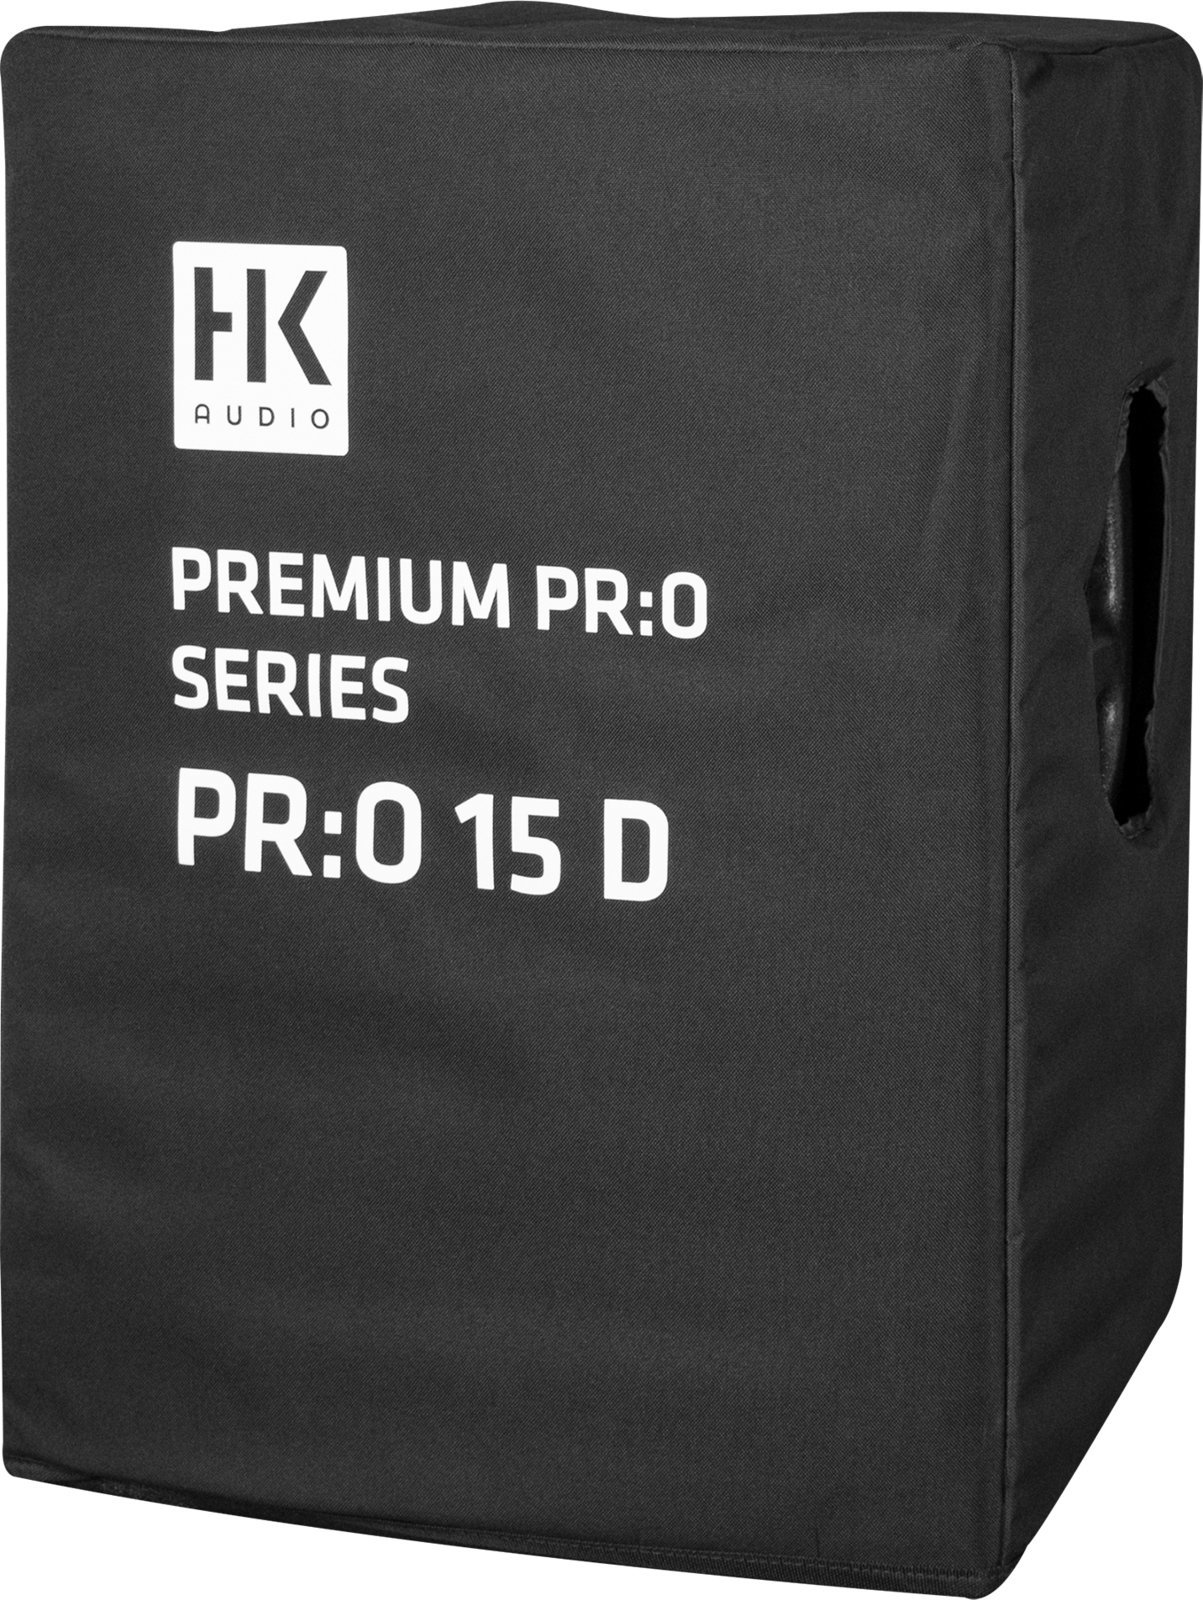 Τσάντα για Ηχεία HK Audio PR:O 15 D CVR Τσάντα για Ηχεία